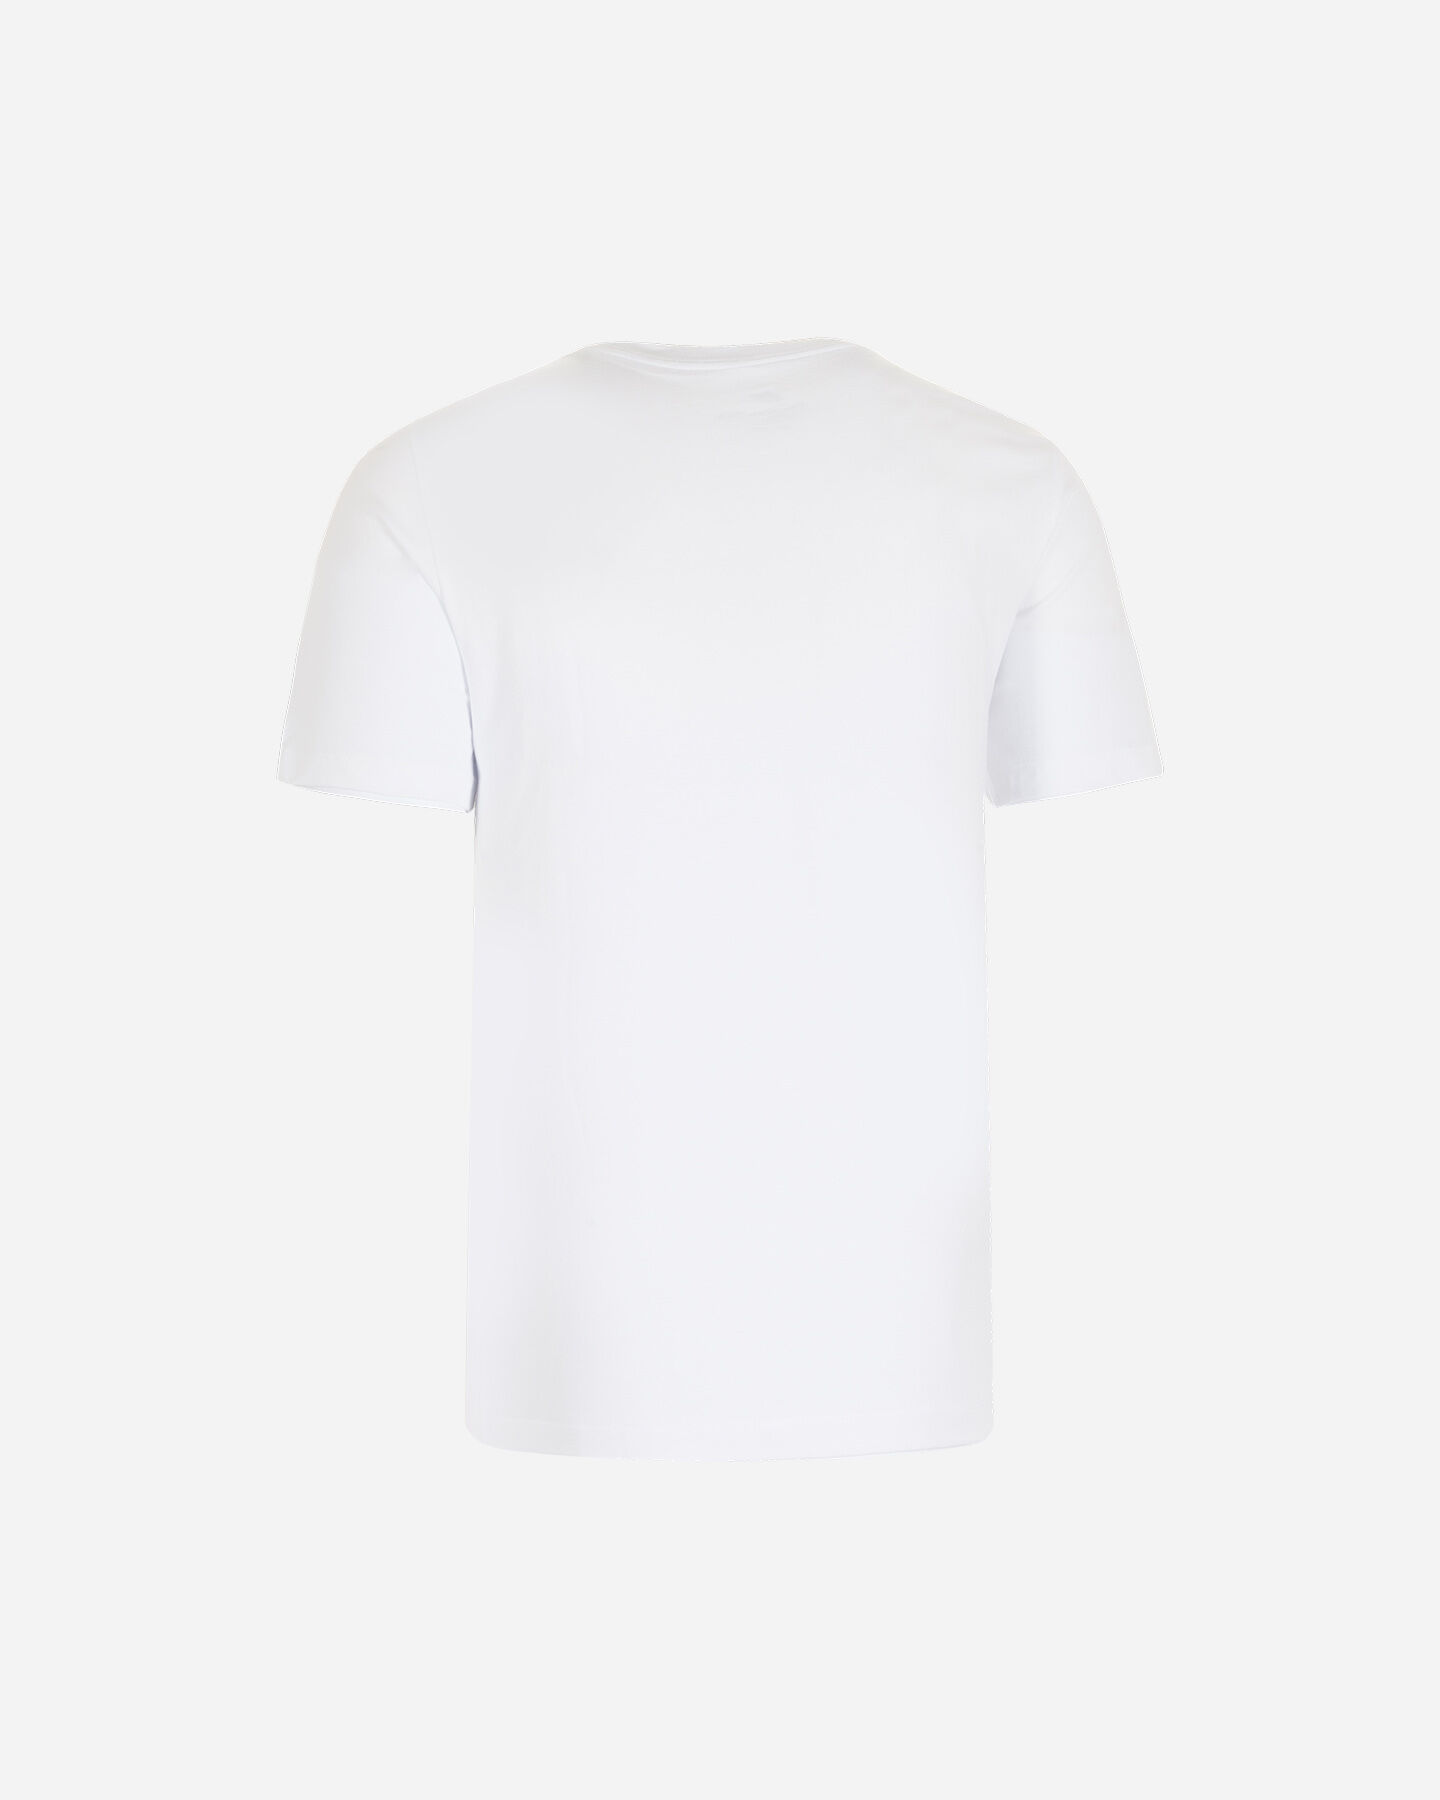  T-Shirt NIKE FUTURA ICON M S2015066|101|XS scatto 1